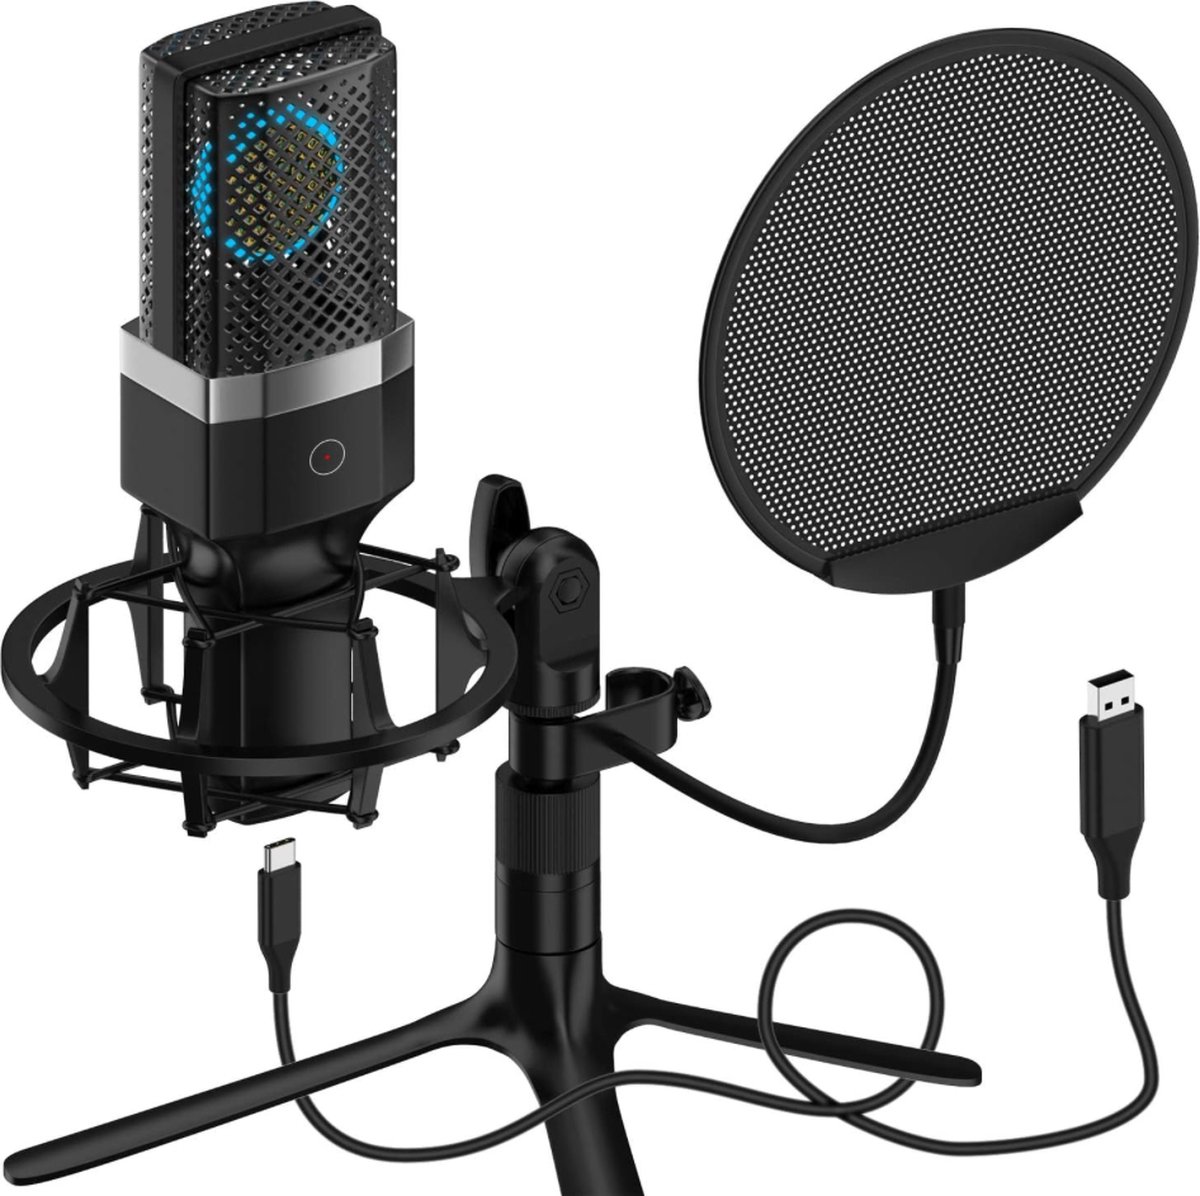 Yanmai - USB PC Microfoon - Professionele Condensator Microfoon - voor PC/Laptop/Gaming - Plug & Play met Touch Mute - Dubbellaags Pop Filter en Statief voor Studio Opname Uitzenden en Gaming - Gaming Microfoon - Vlog Microfoon - Podcast Microfoon